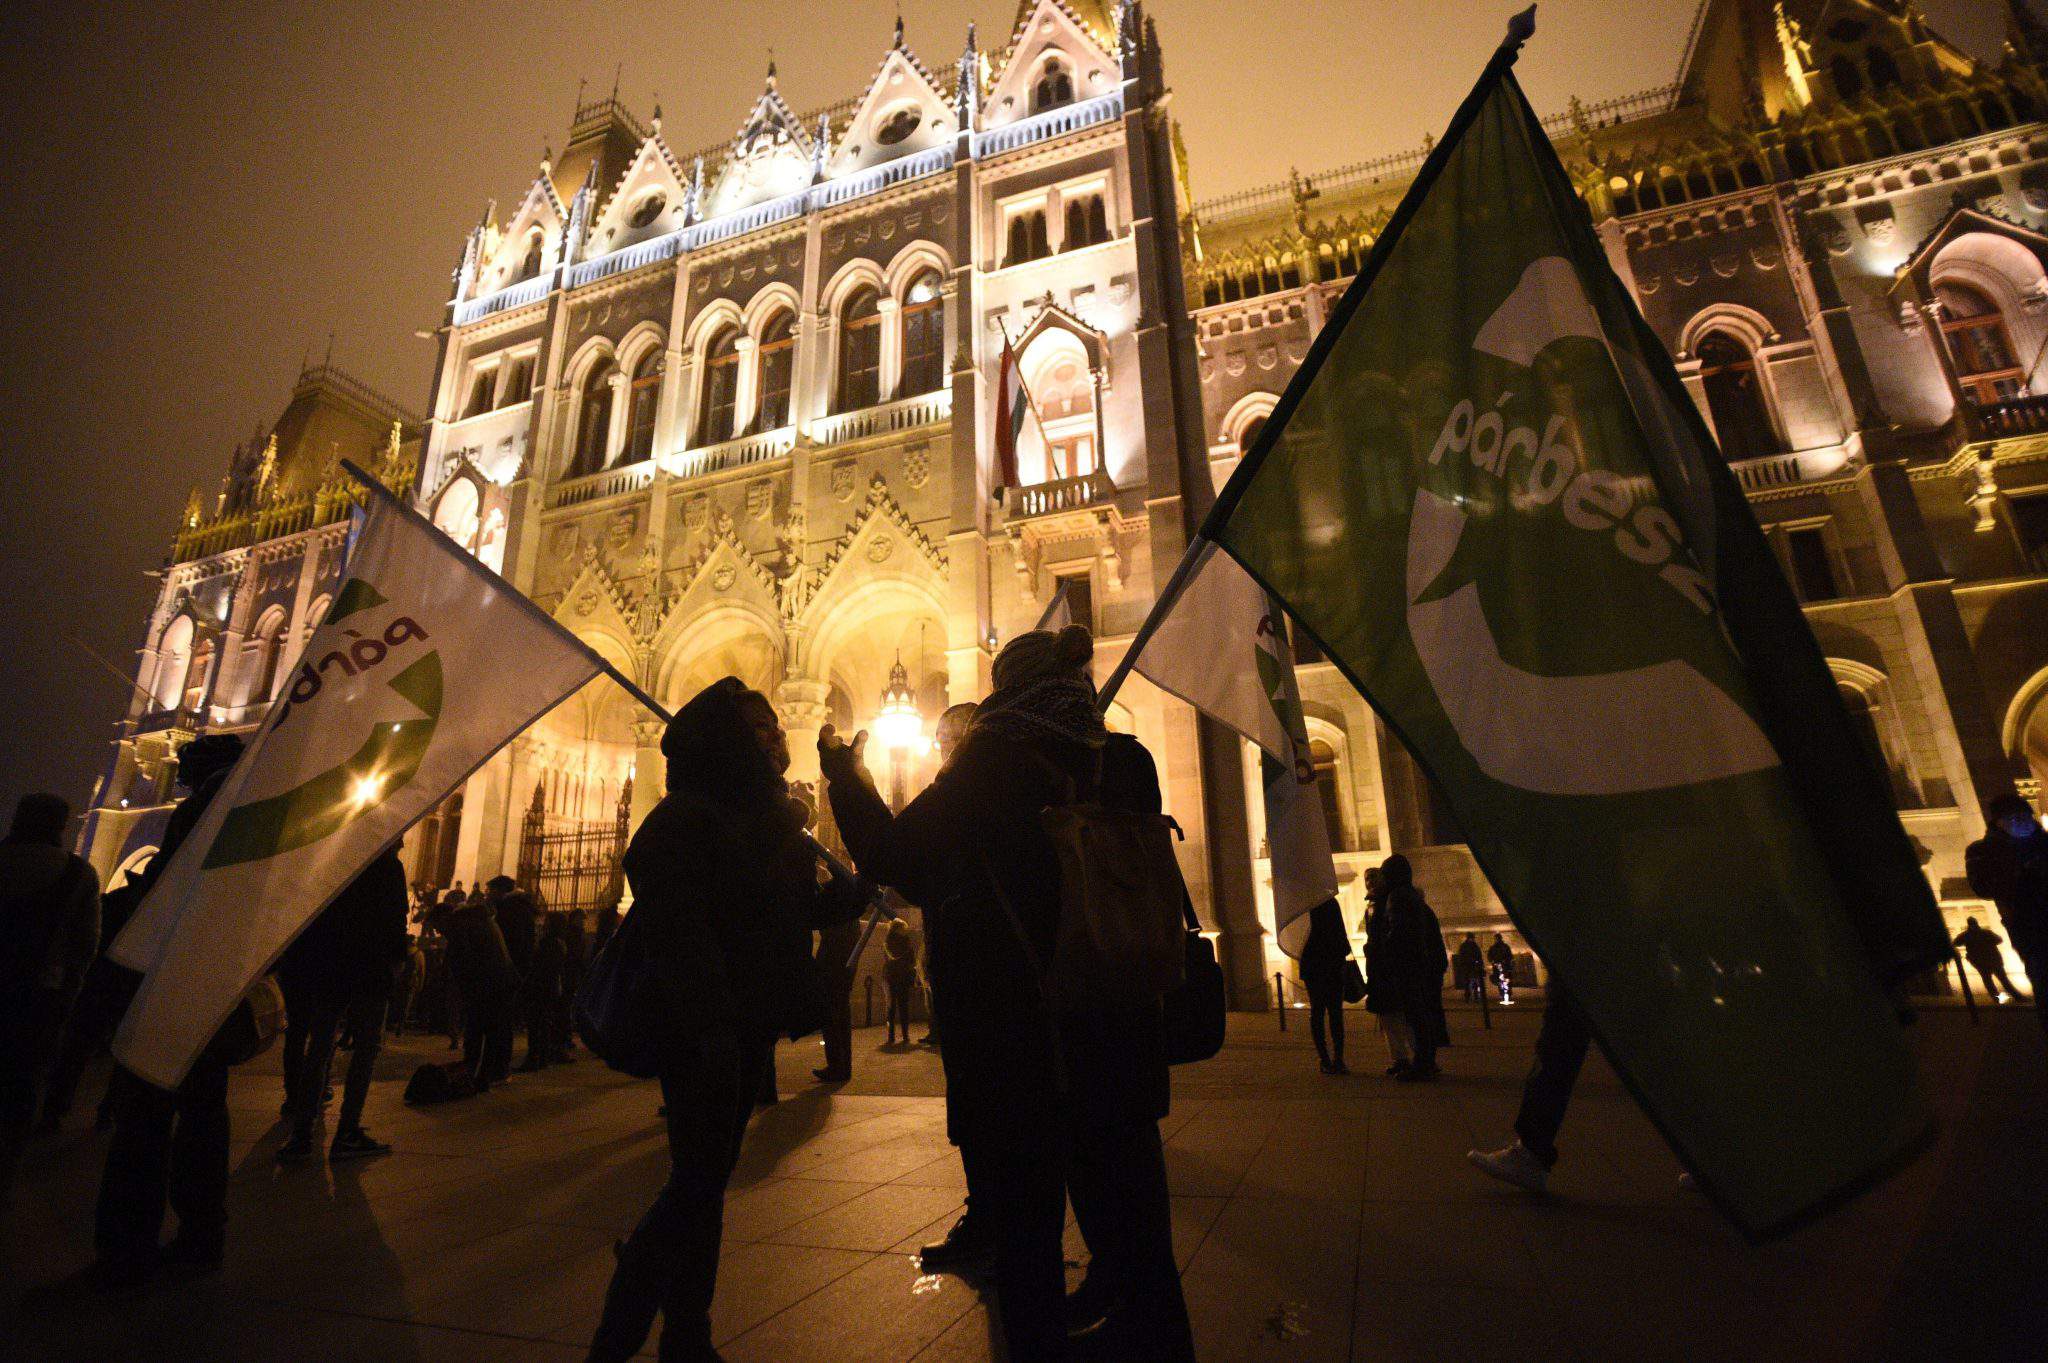 हंगरी की संसद के पास प्रदर्शनकारियों और पुलिस में झड़प - तस्वीरें